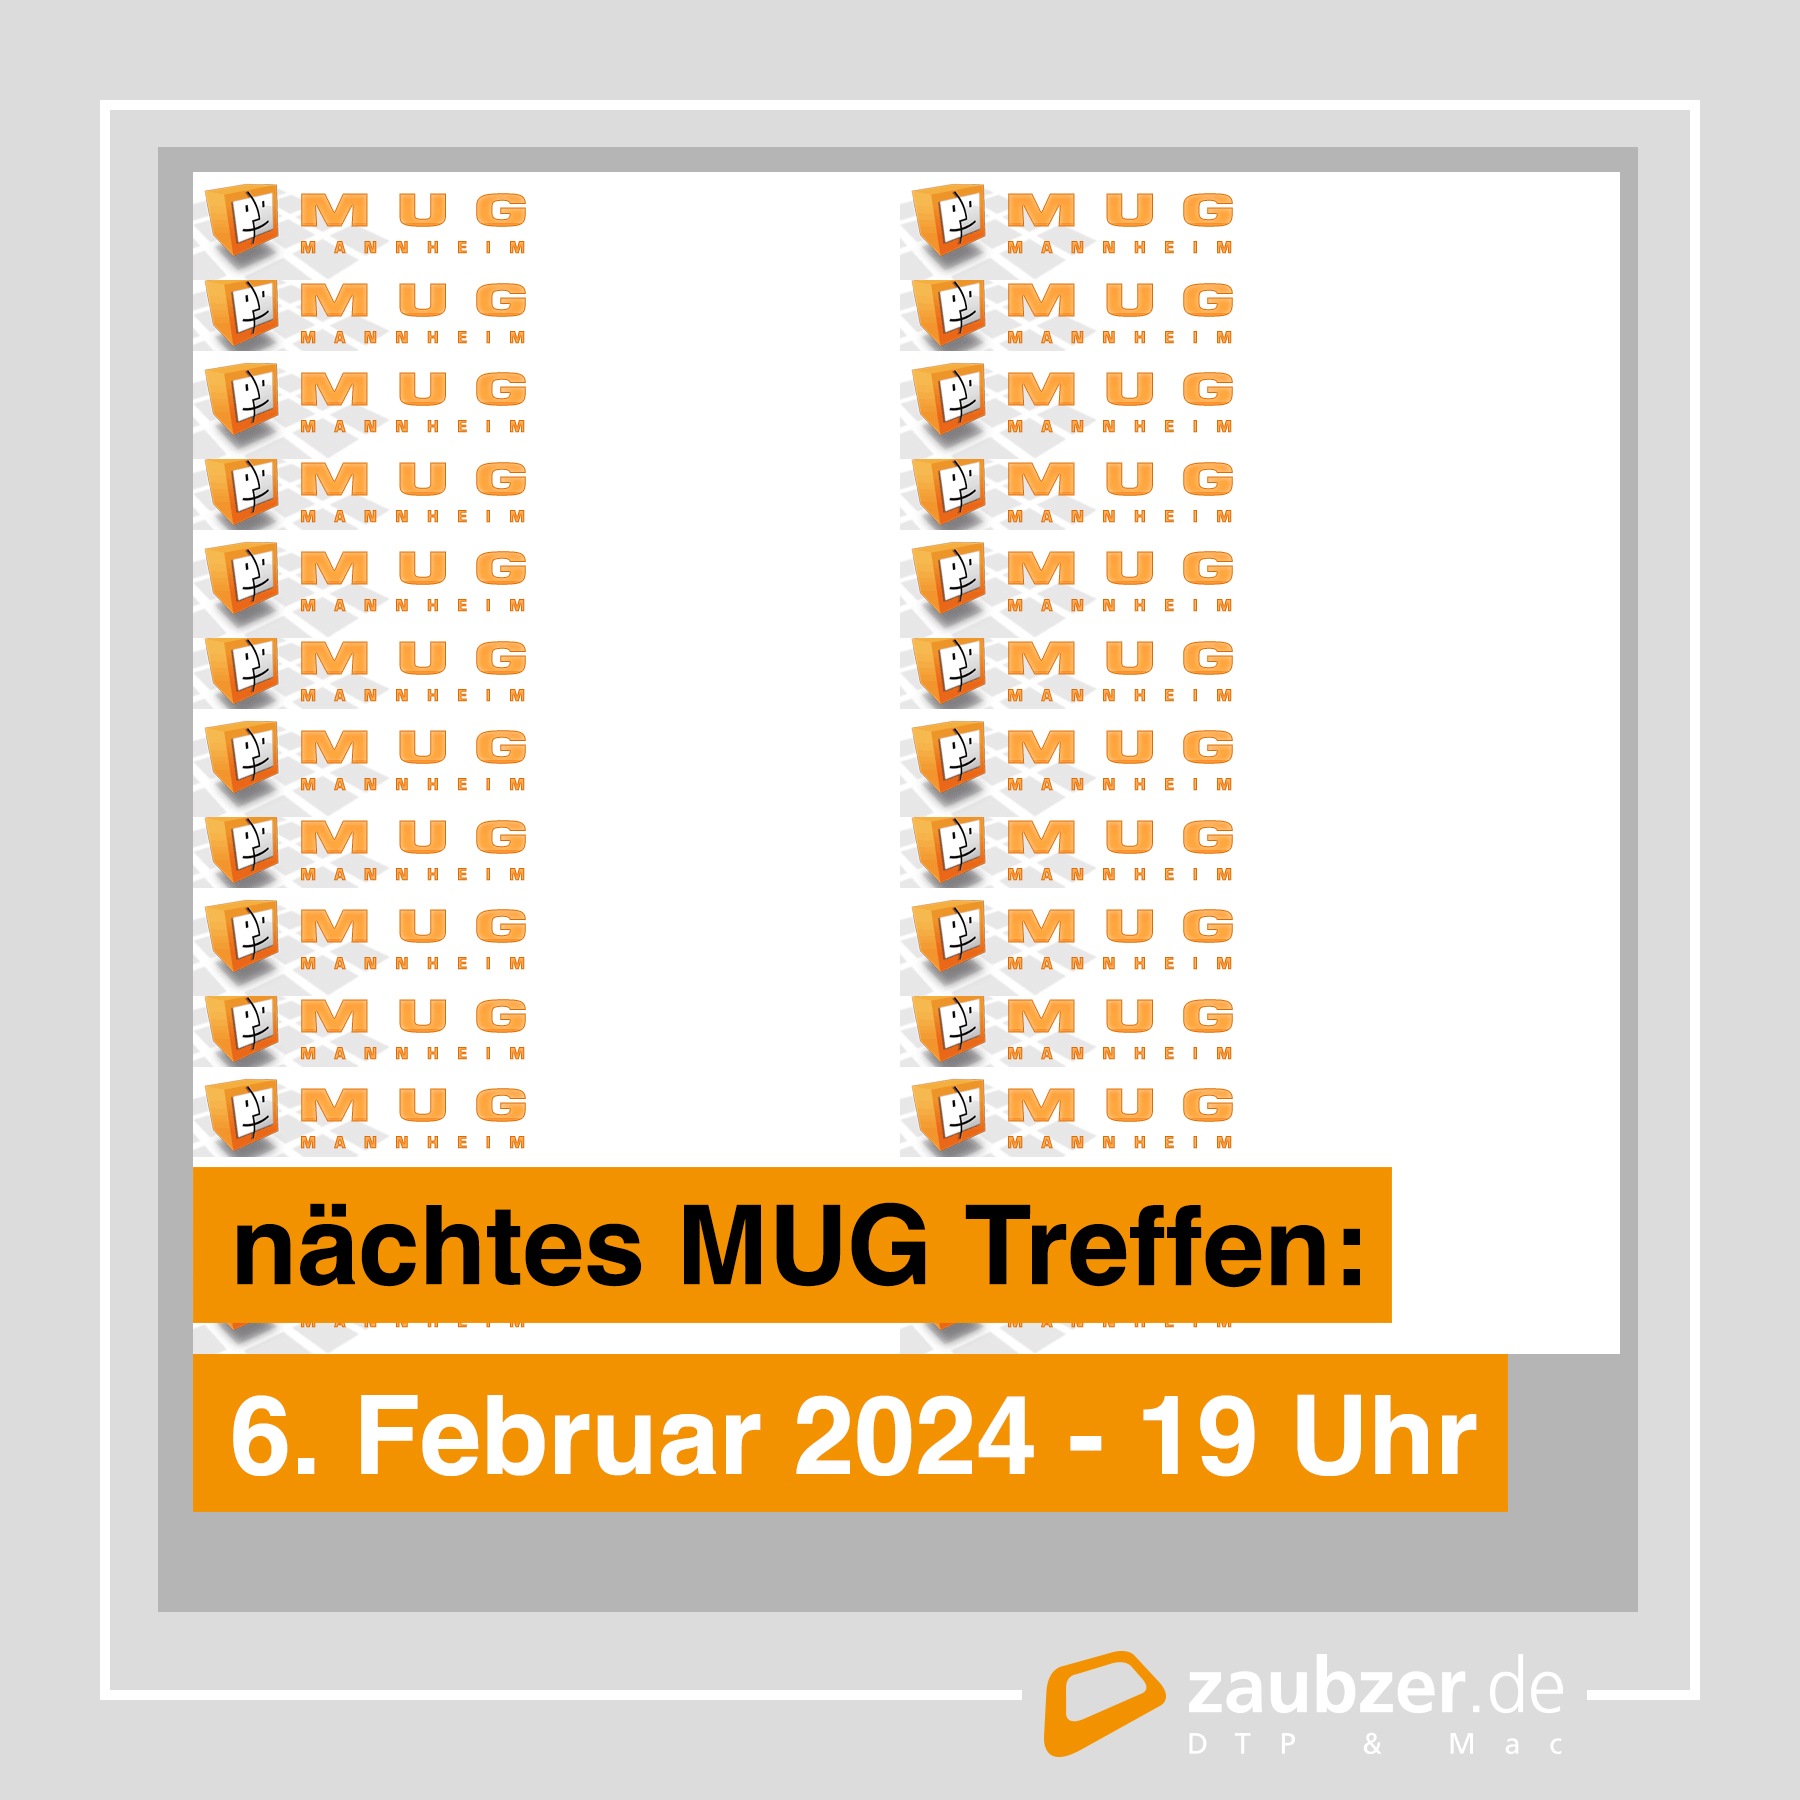 MUG Mannheim - Macintosh User Group Mannheim - zaubzer.de